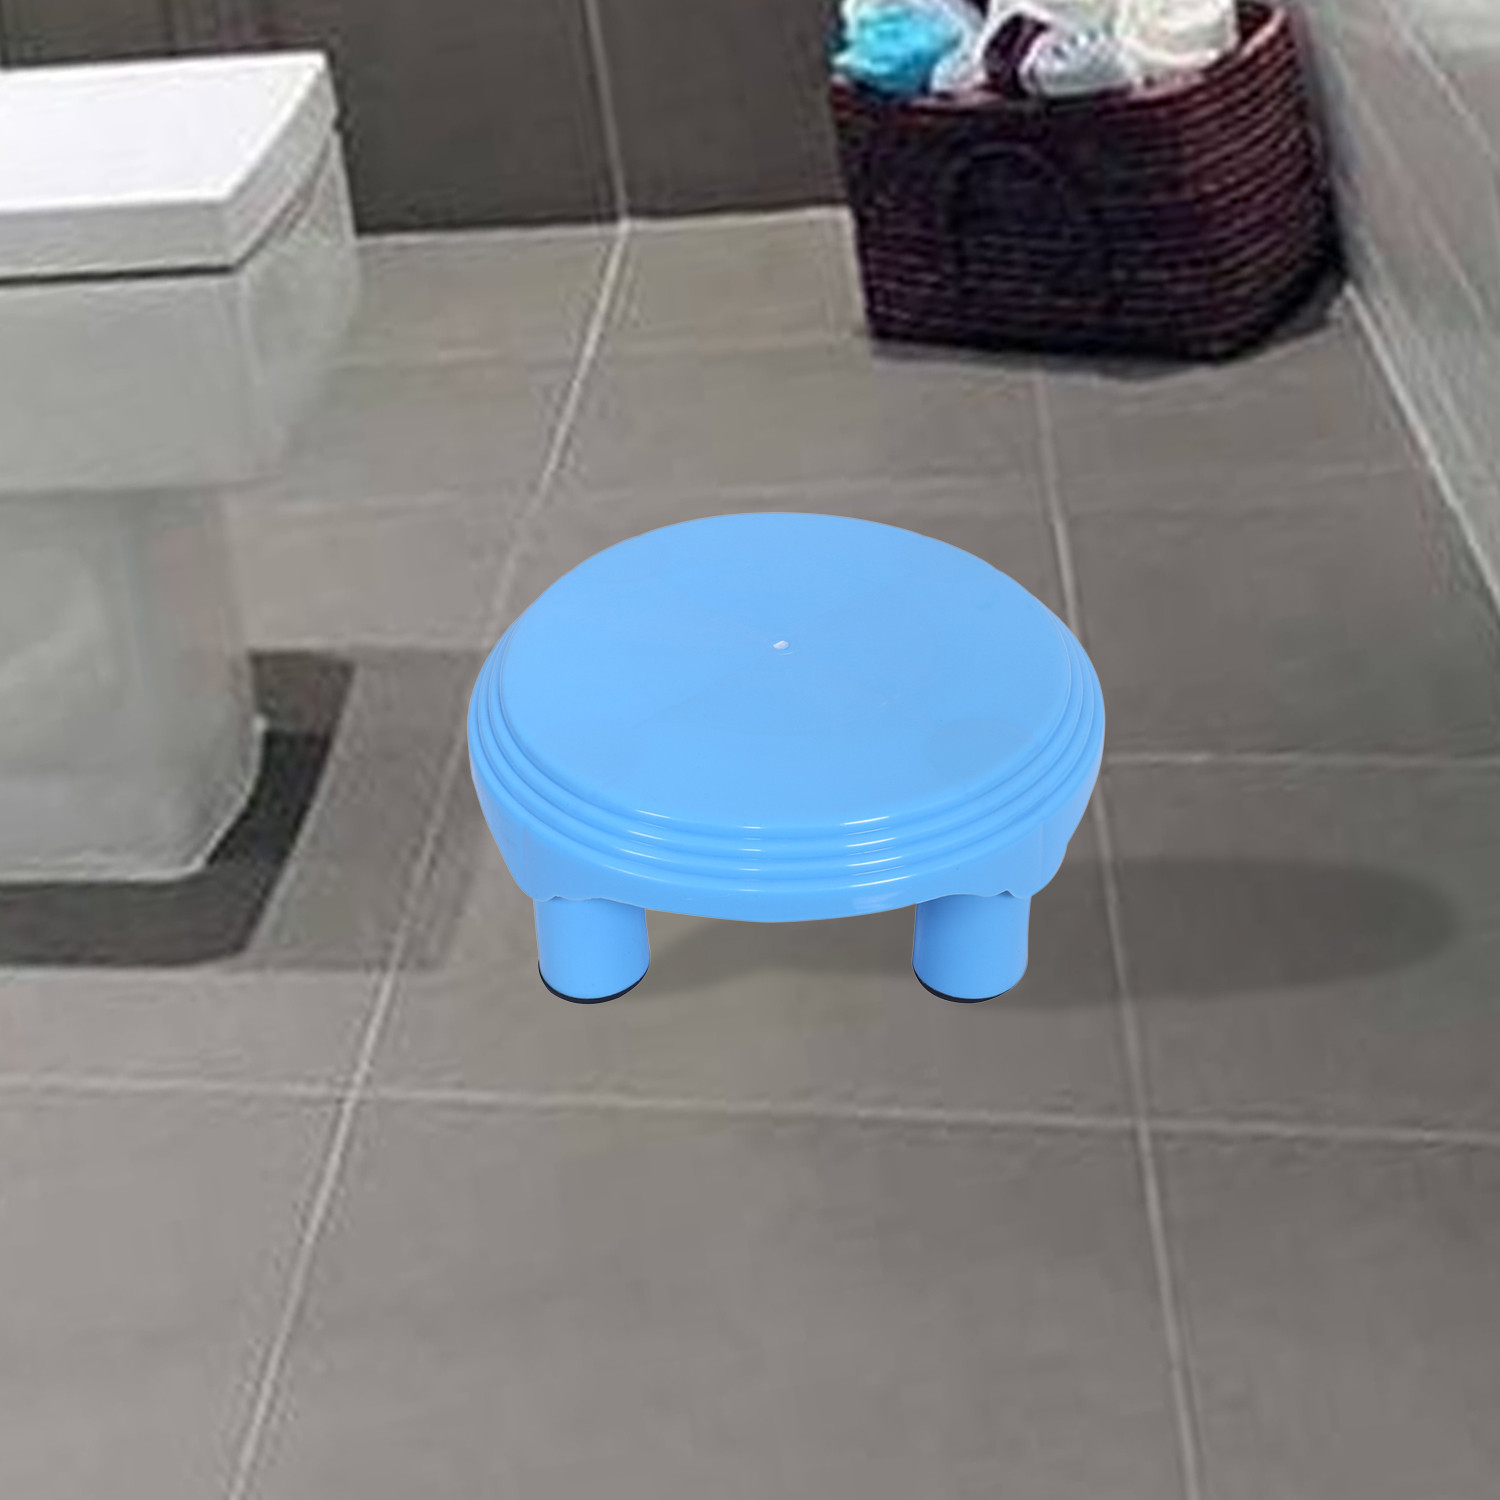 Kuber Industries Bathroom Stool|Plastic Stool|Anti-slip Bathing Stool|Stool for Senior Citizen|Patla for Bathroom|(Sky Blue)